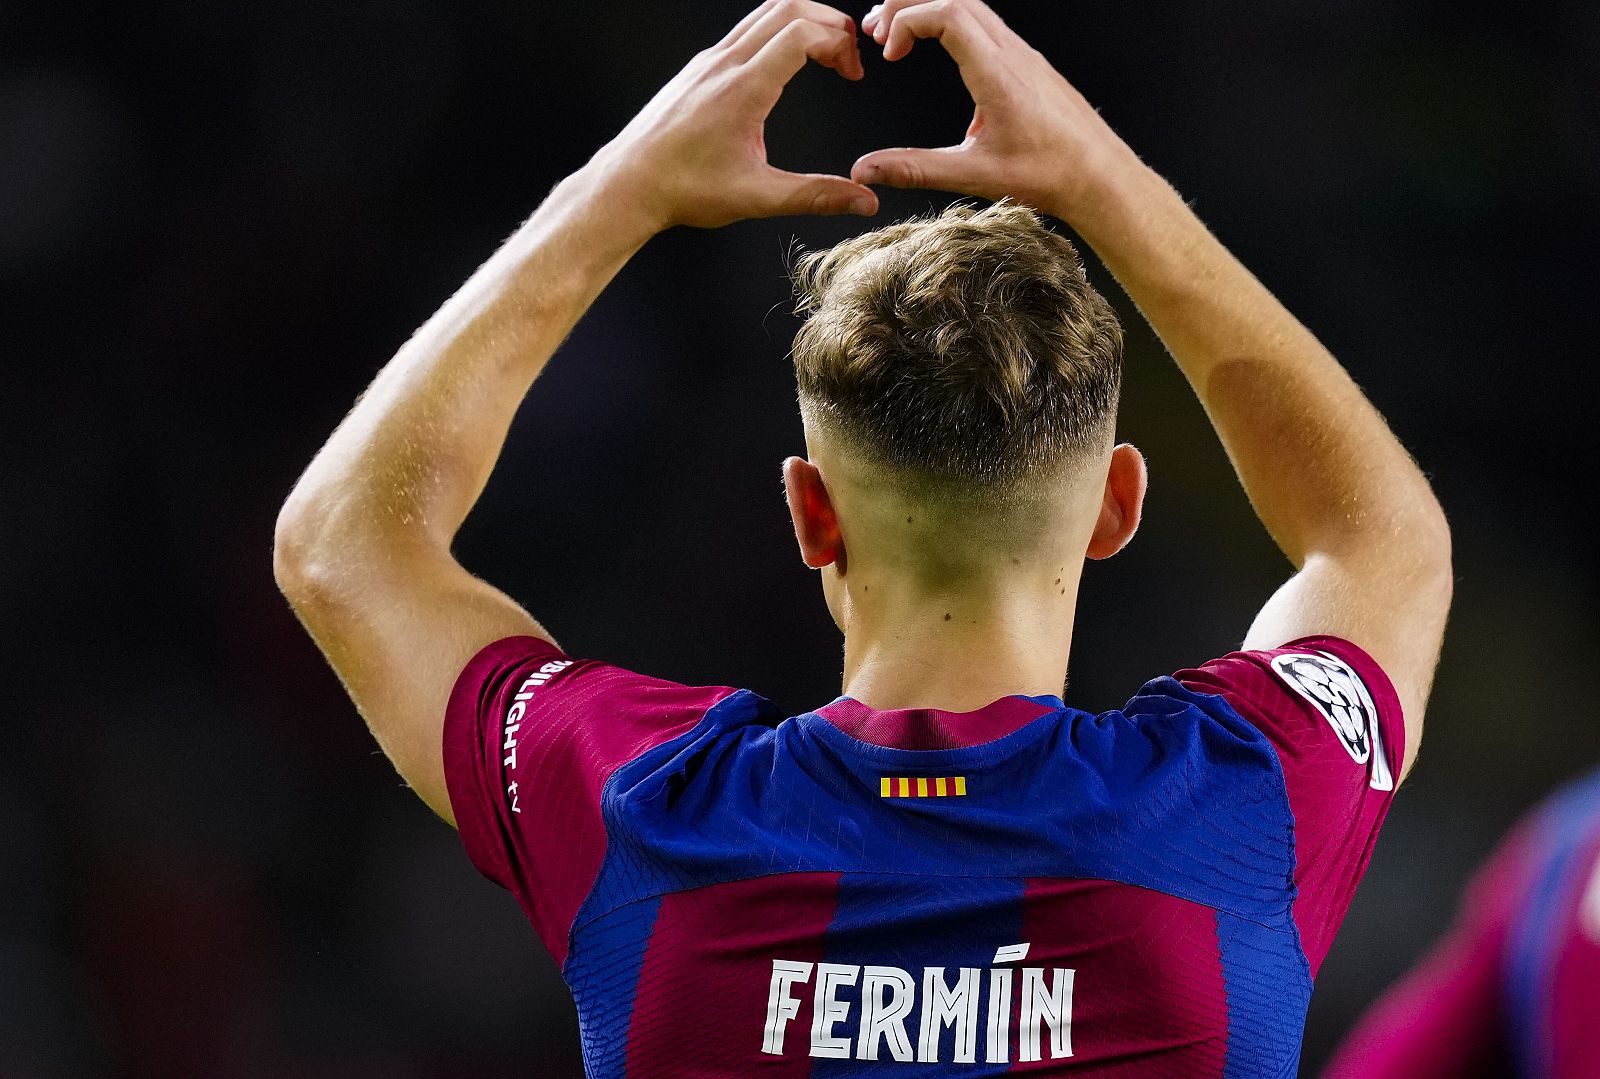 El jugador del Barça Fermín celebra su tanto en Champions ante el Shakhtar Donestk.